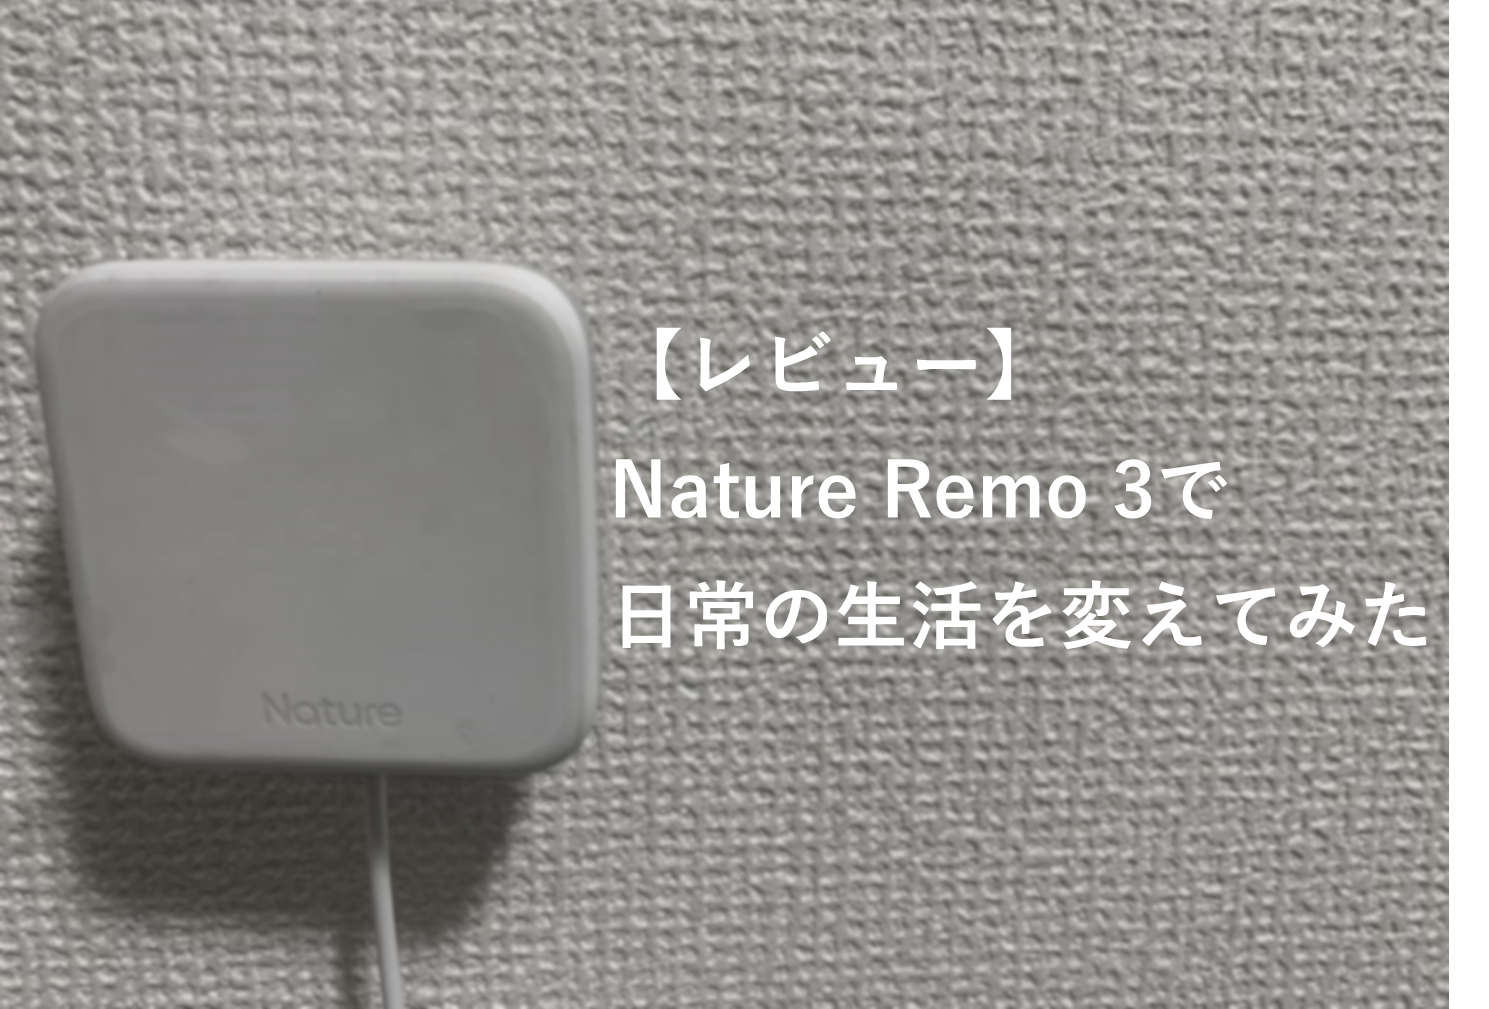 【レビュー】Nature Remo 3で日常の生活を変えてみた